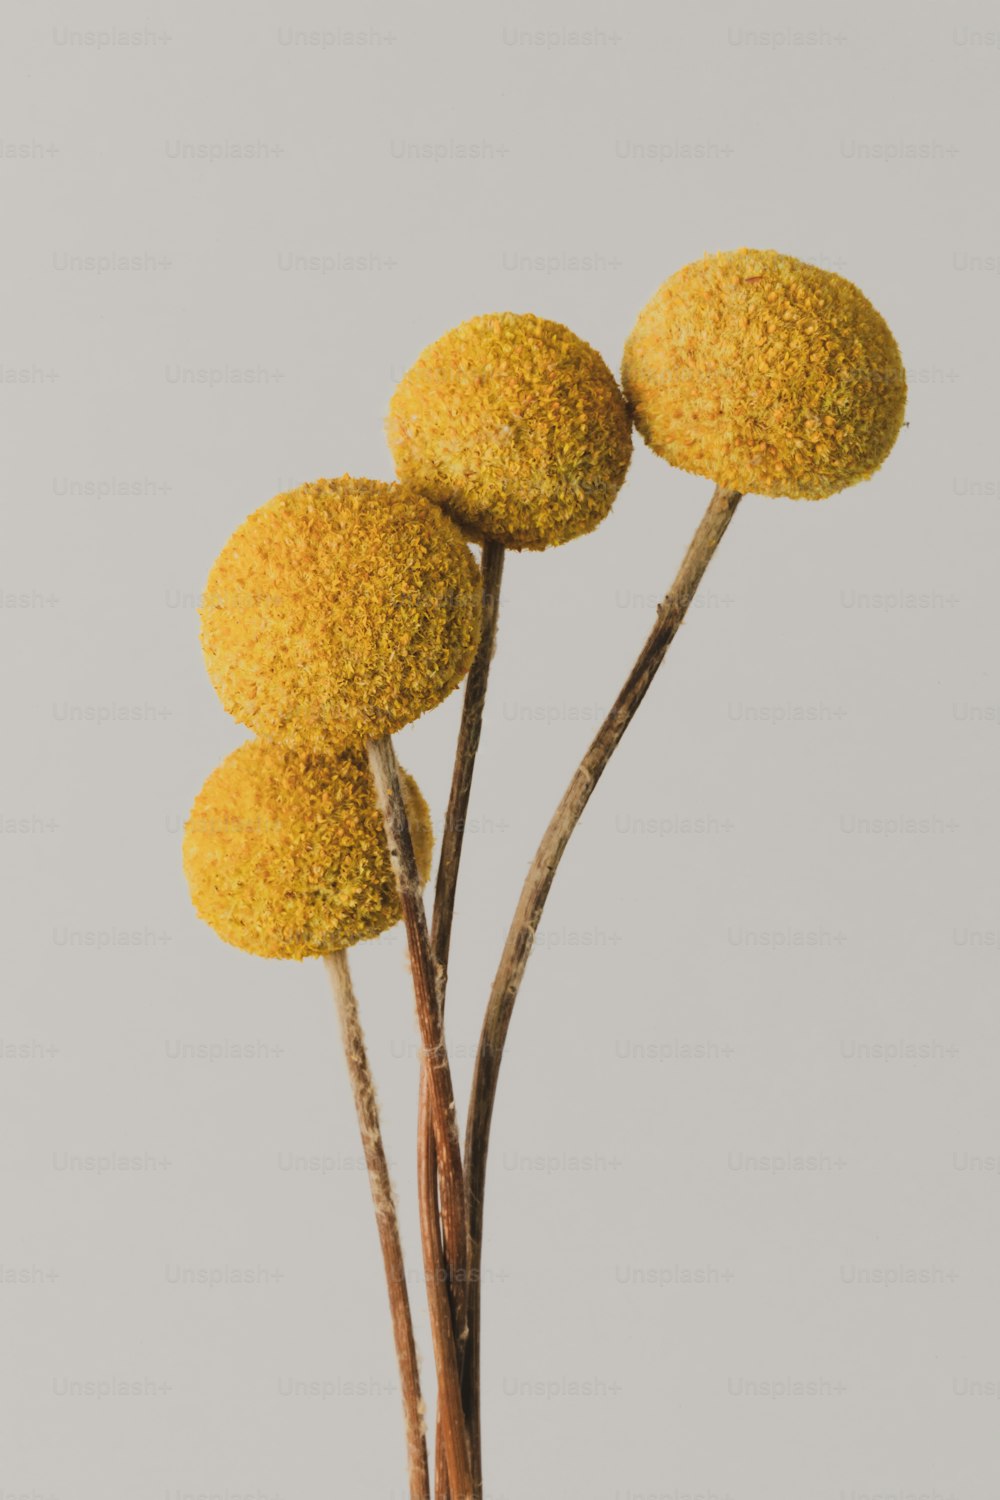 テーブルの上の花瓶に3つの黄色い花